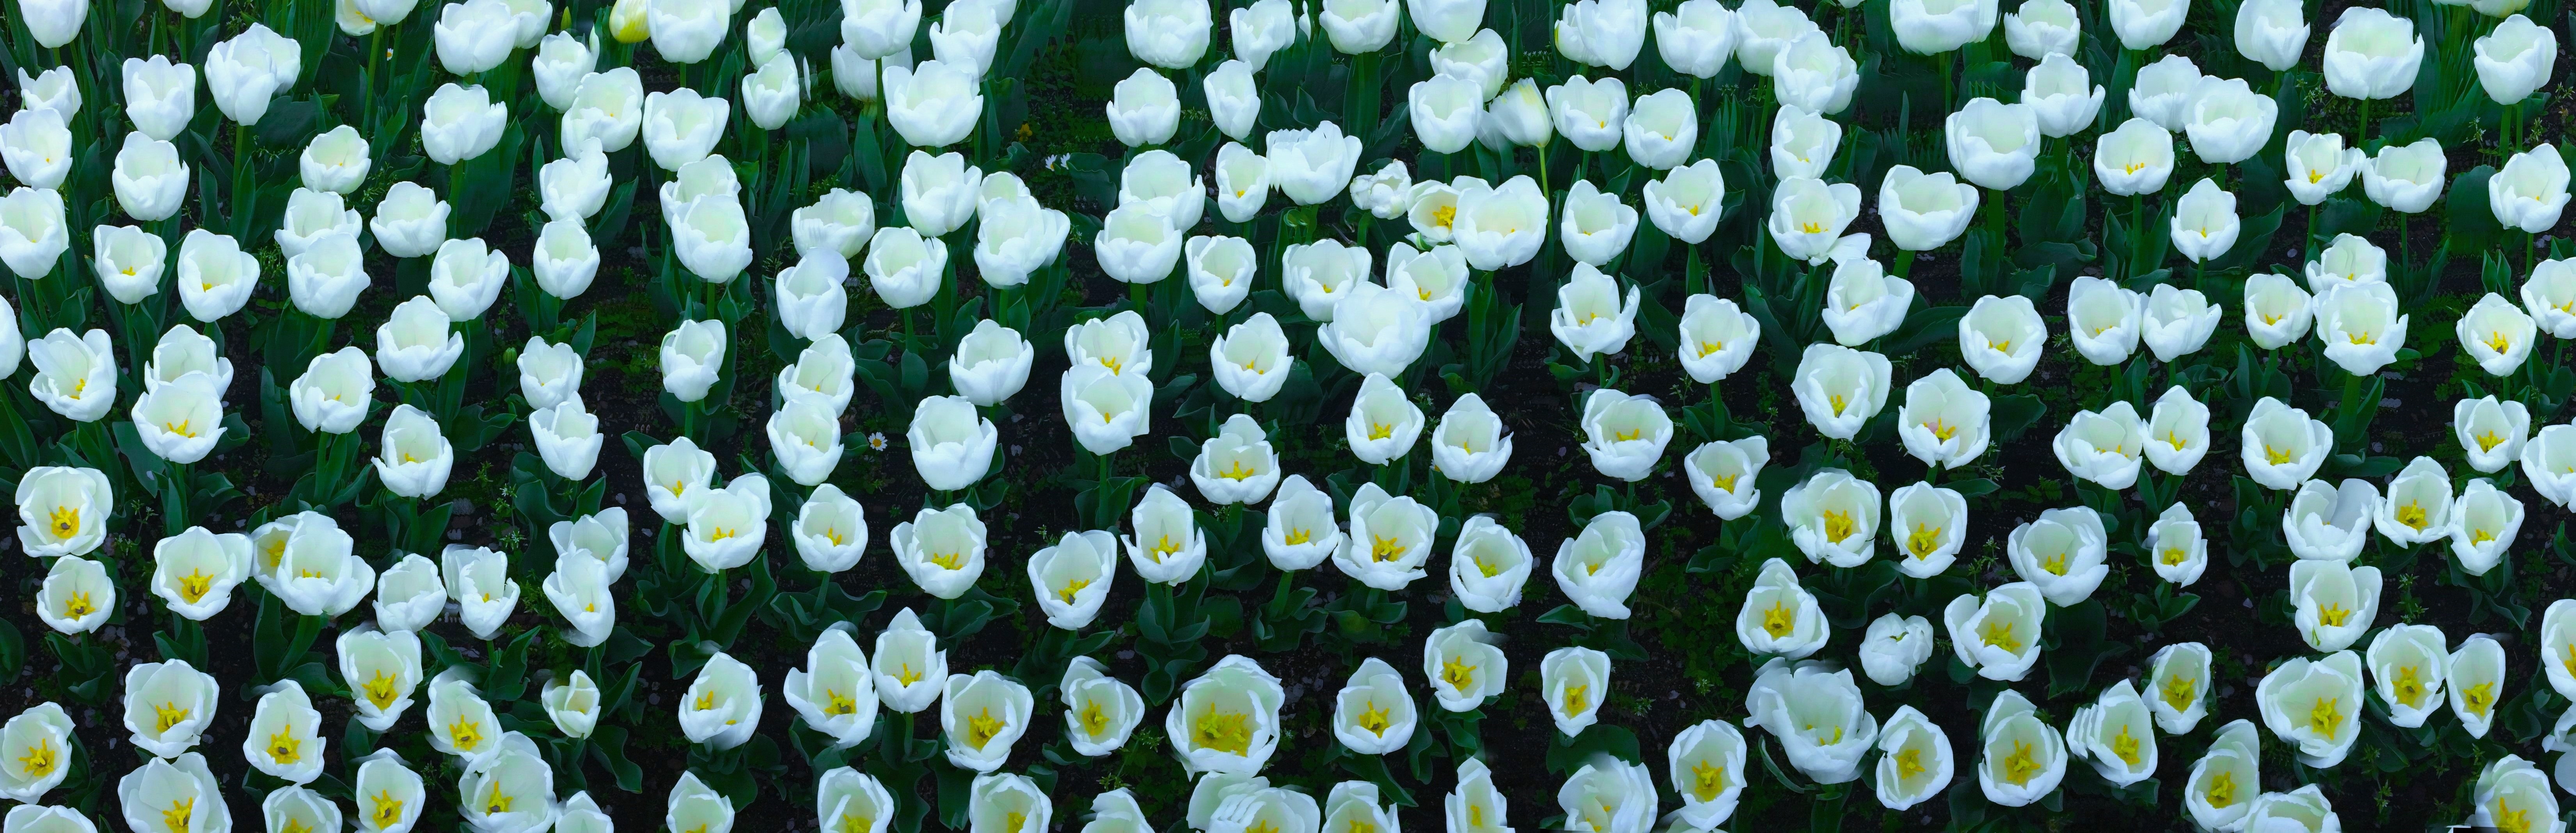 white petaled flower lot